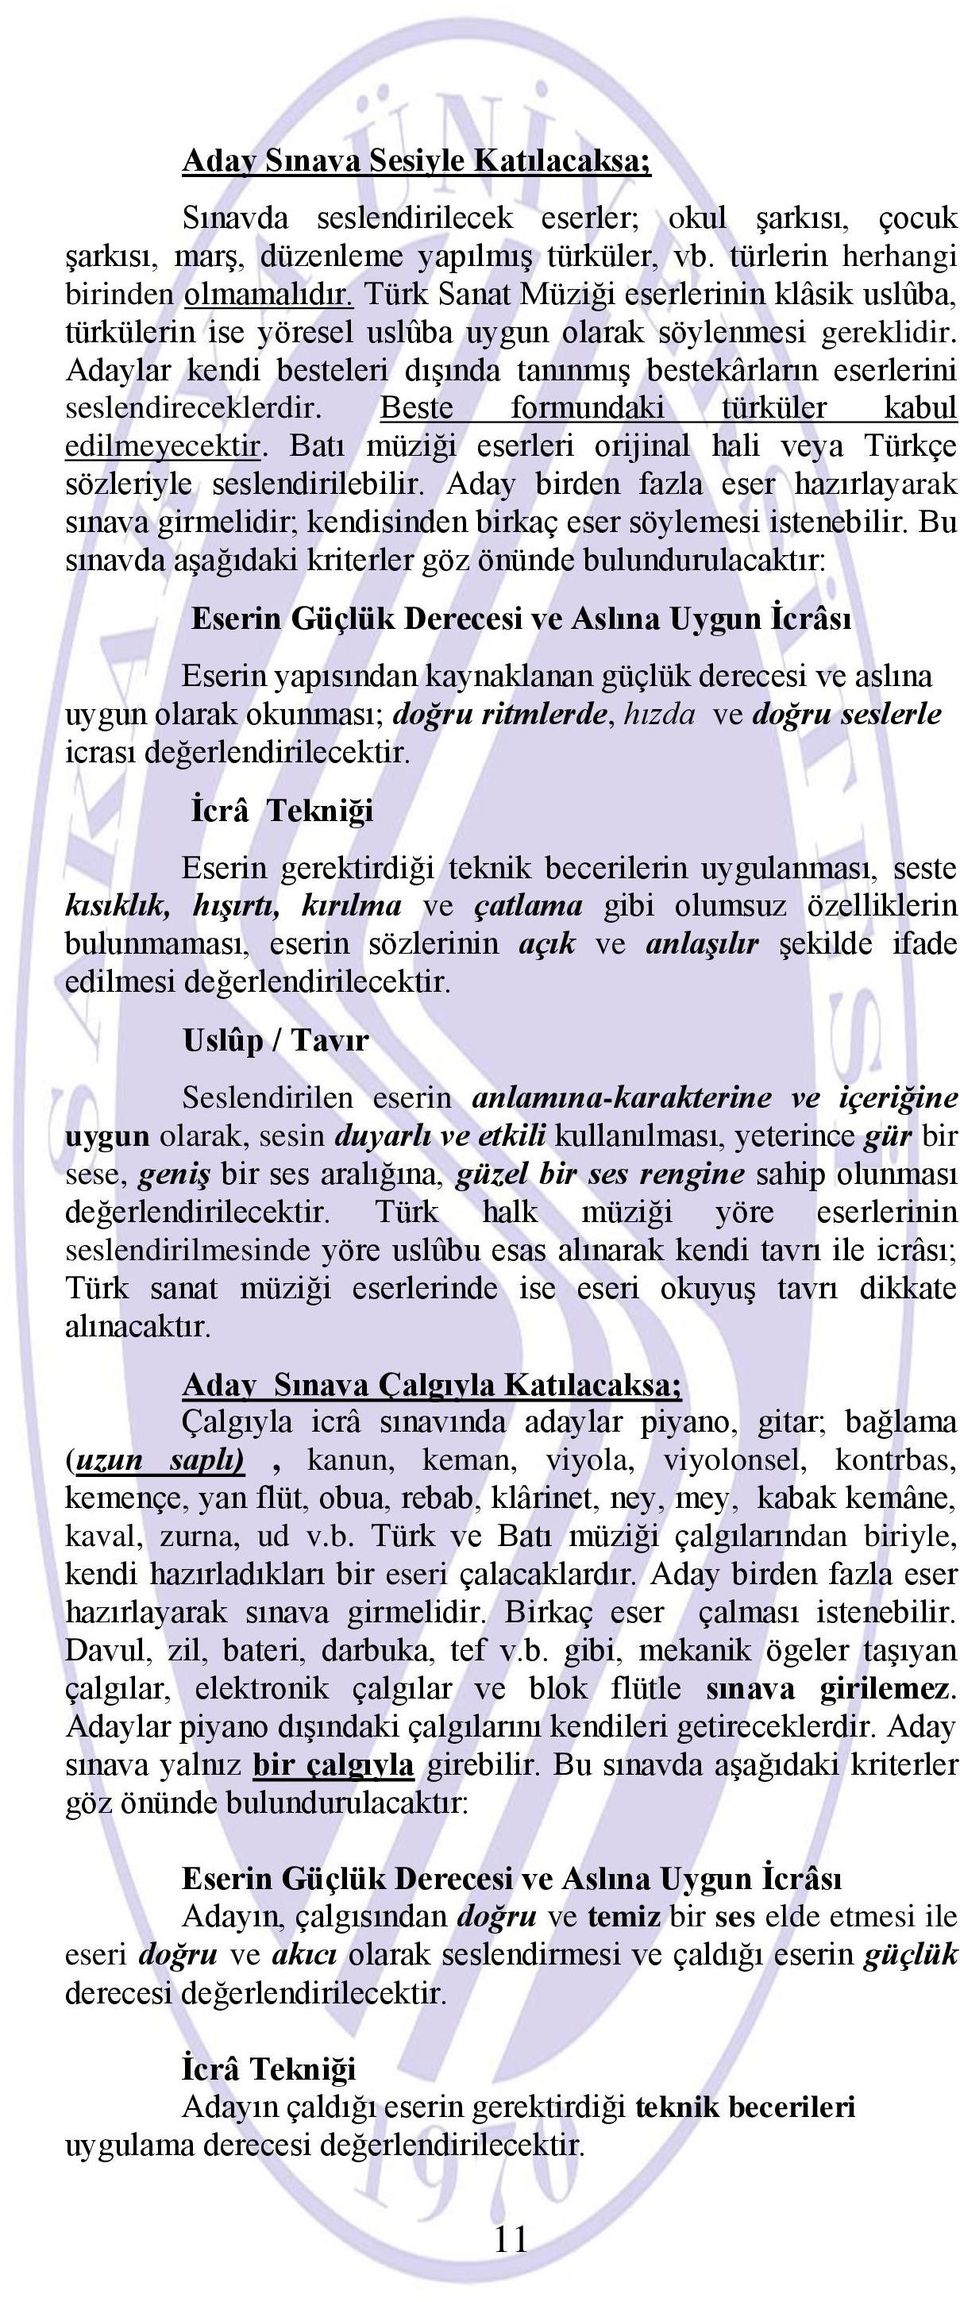 Beste formundaki türküler kabul edilmeyecektir. Batı müziği eserleri orijinal hali veya Türkçe sözleriyle seslendirilebilir.